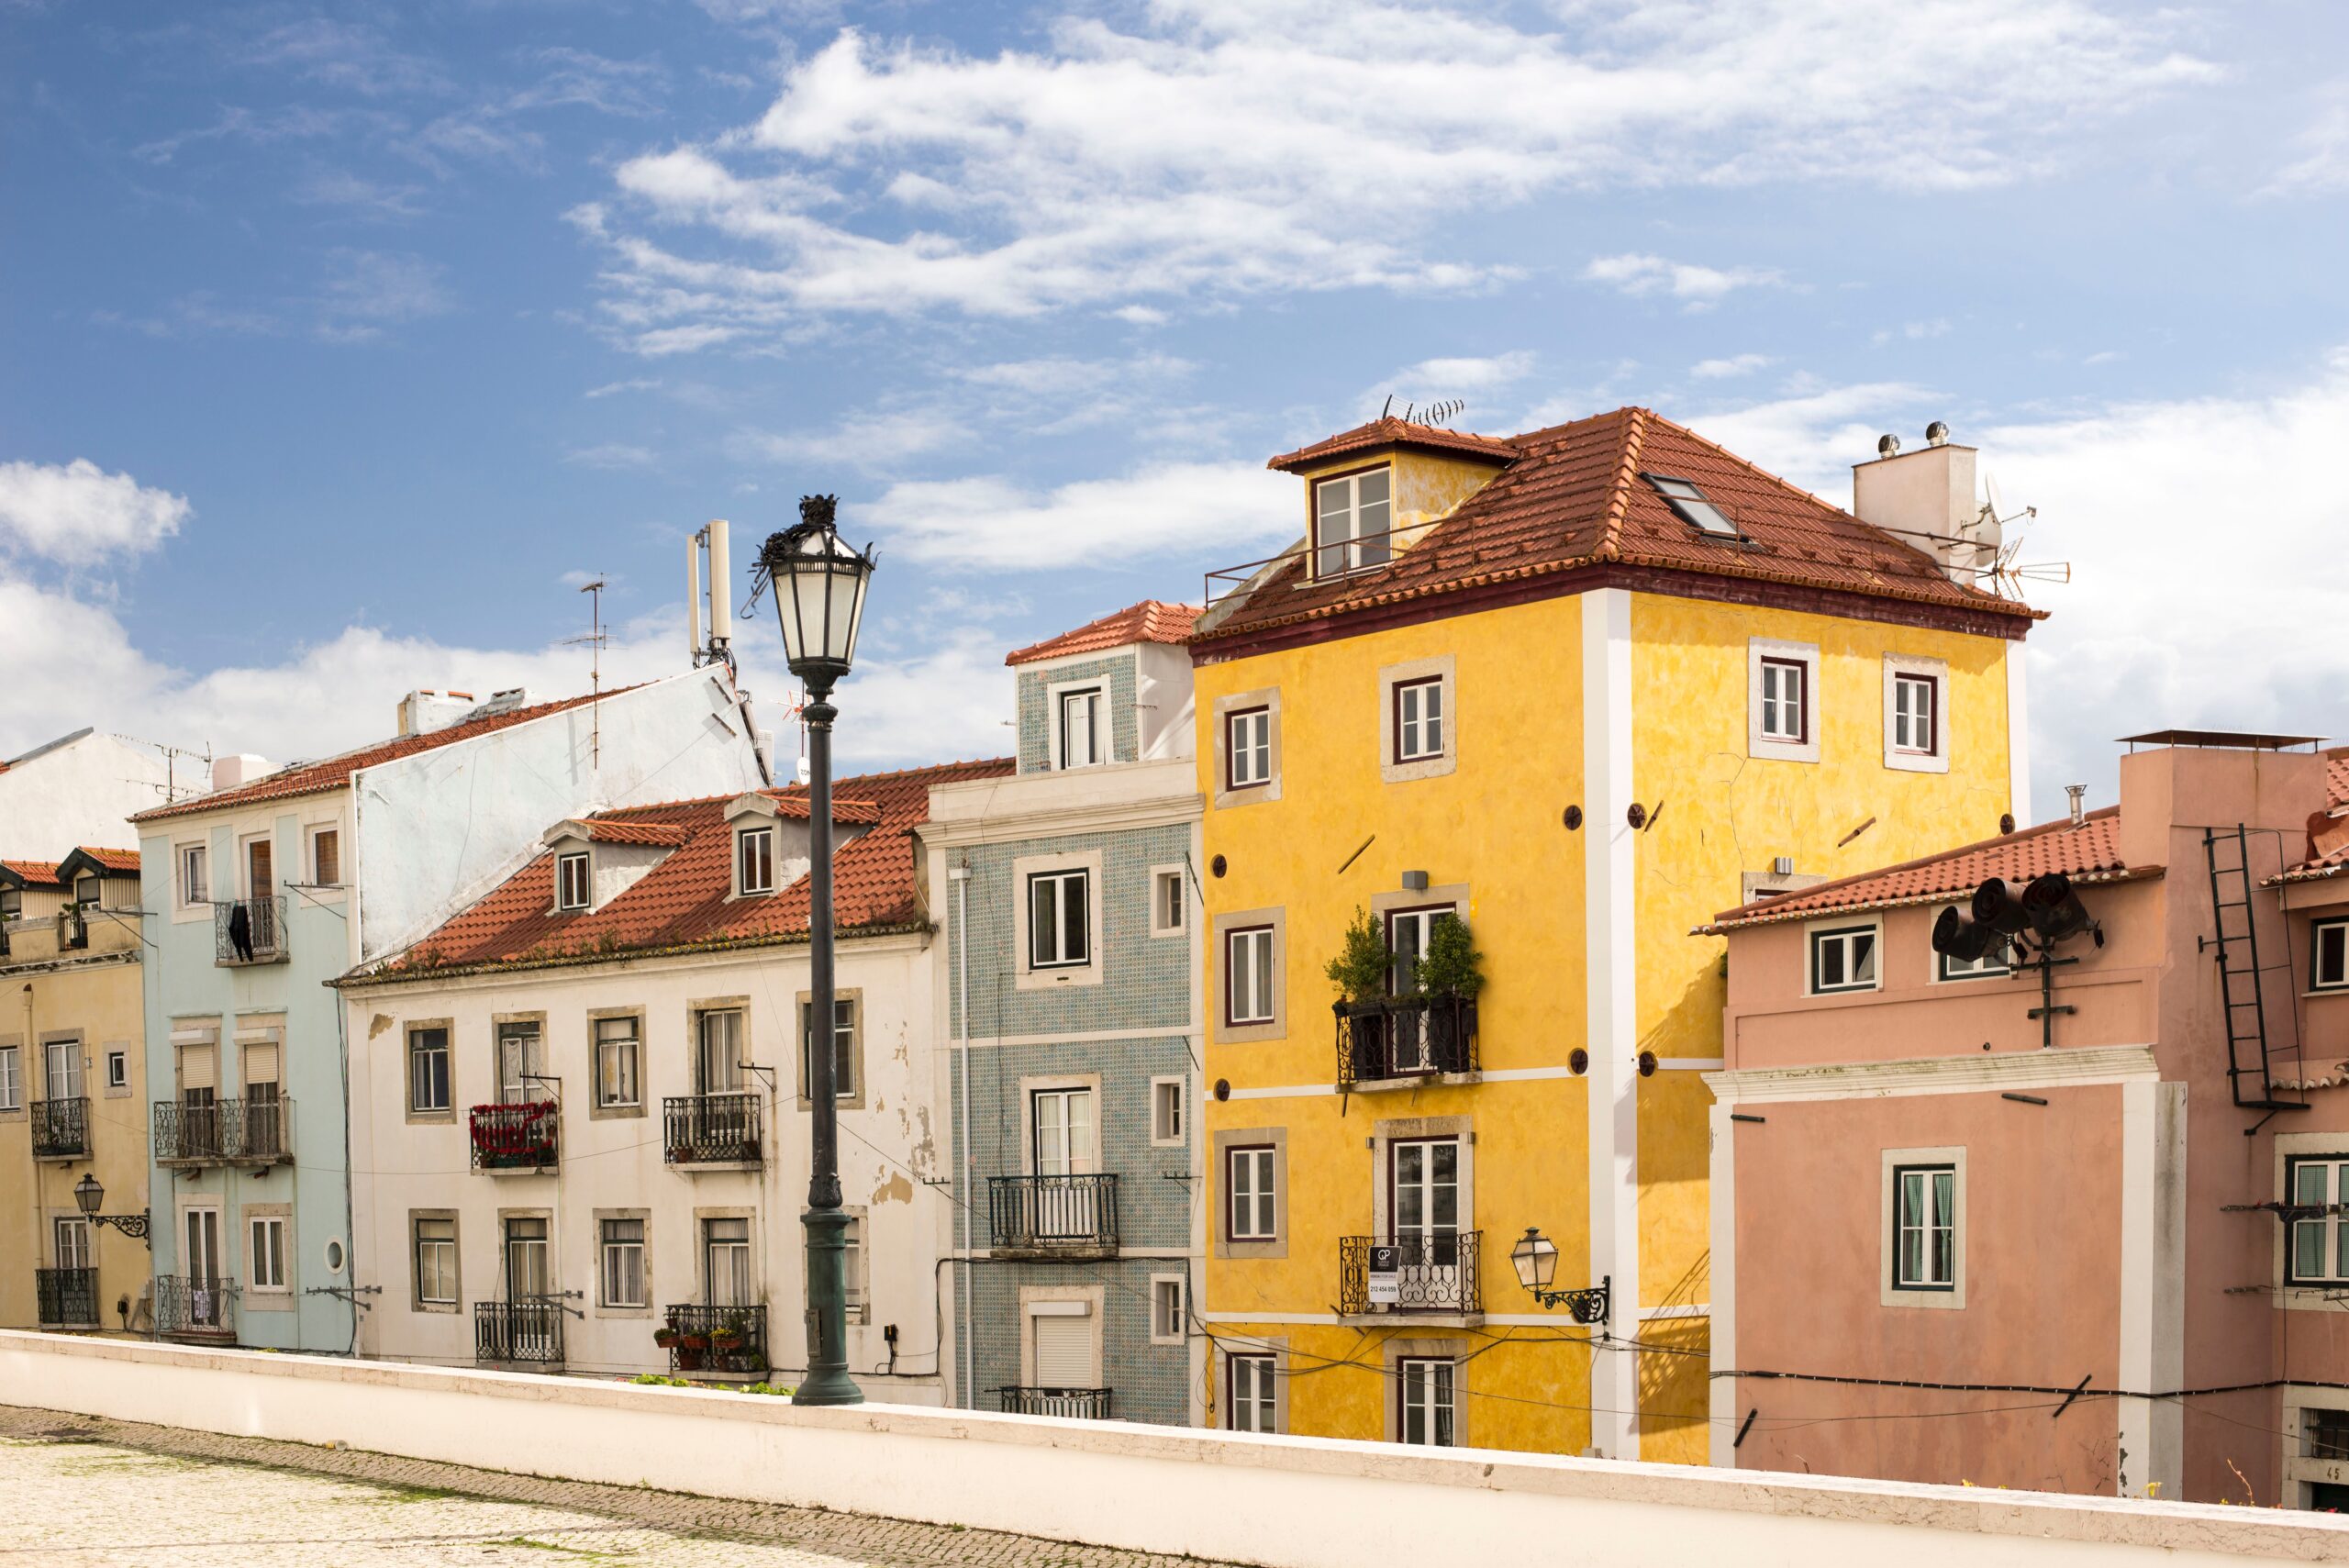 Custo de vida em Lisboa: tudo o que você precisa saber